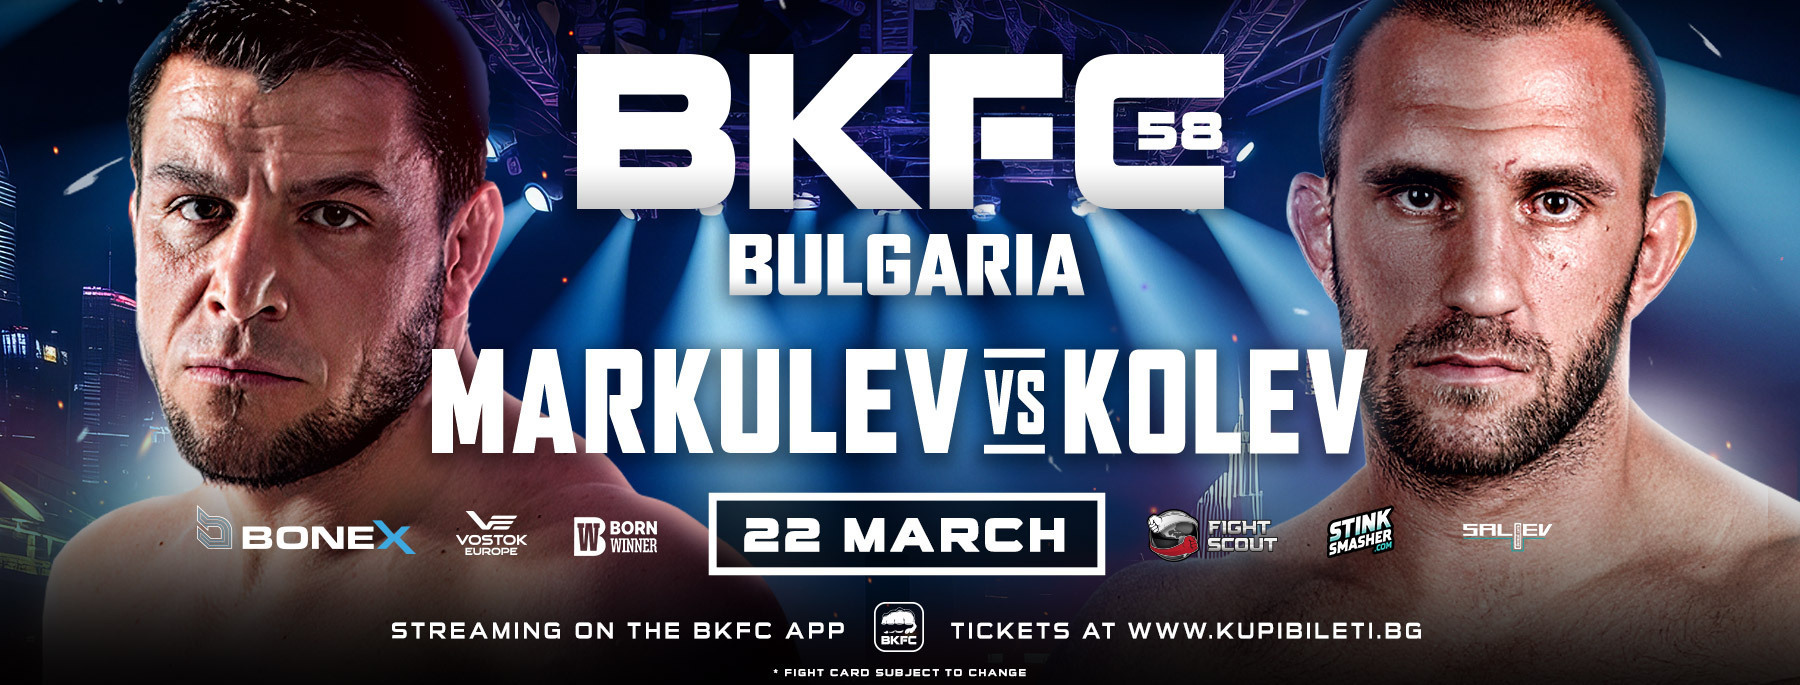 BKFC 58 Markulev vs Kolev 720p WEB DL x264 ORG